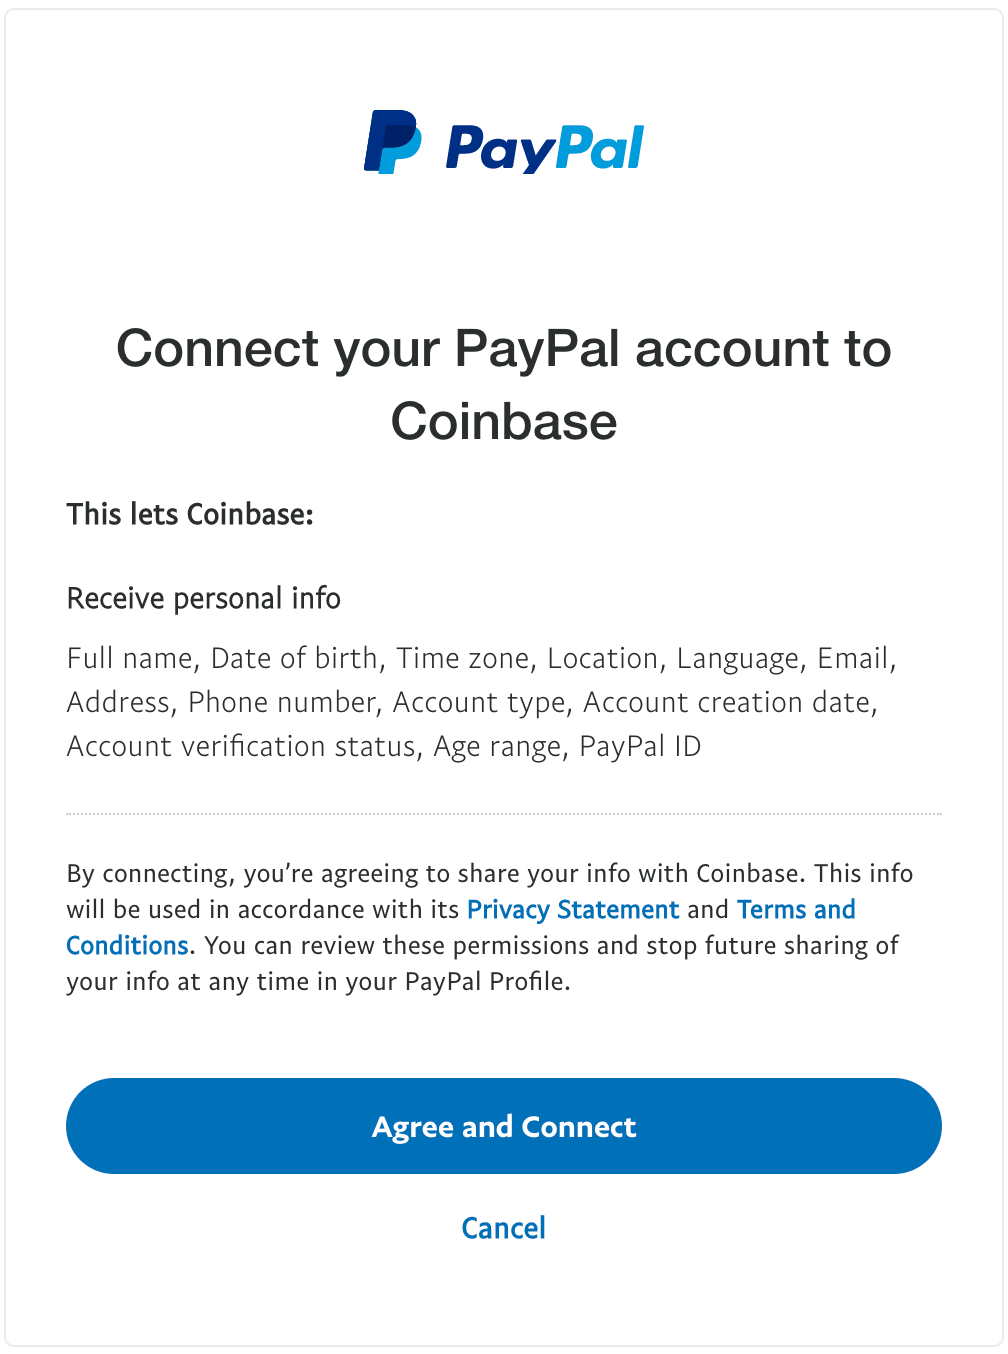 เชื่อมต่อบัญชี PayPal ของคุณกับ Coinbase